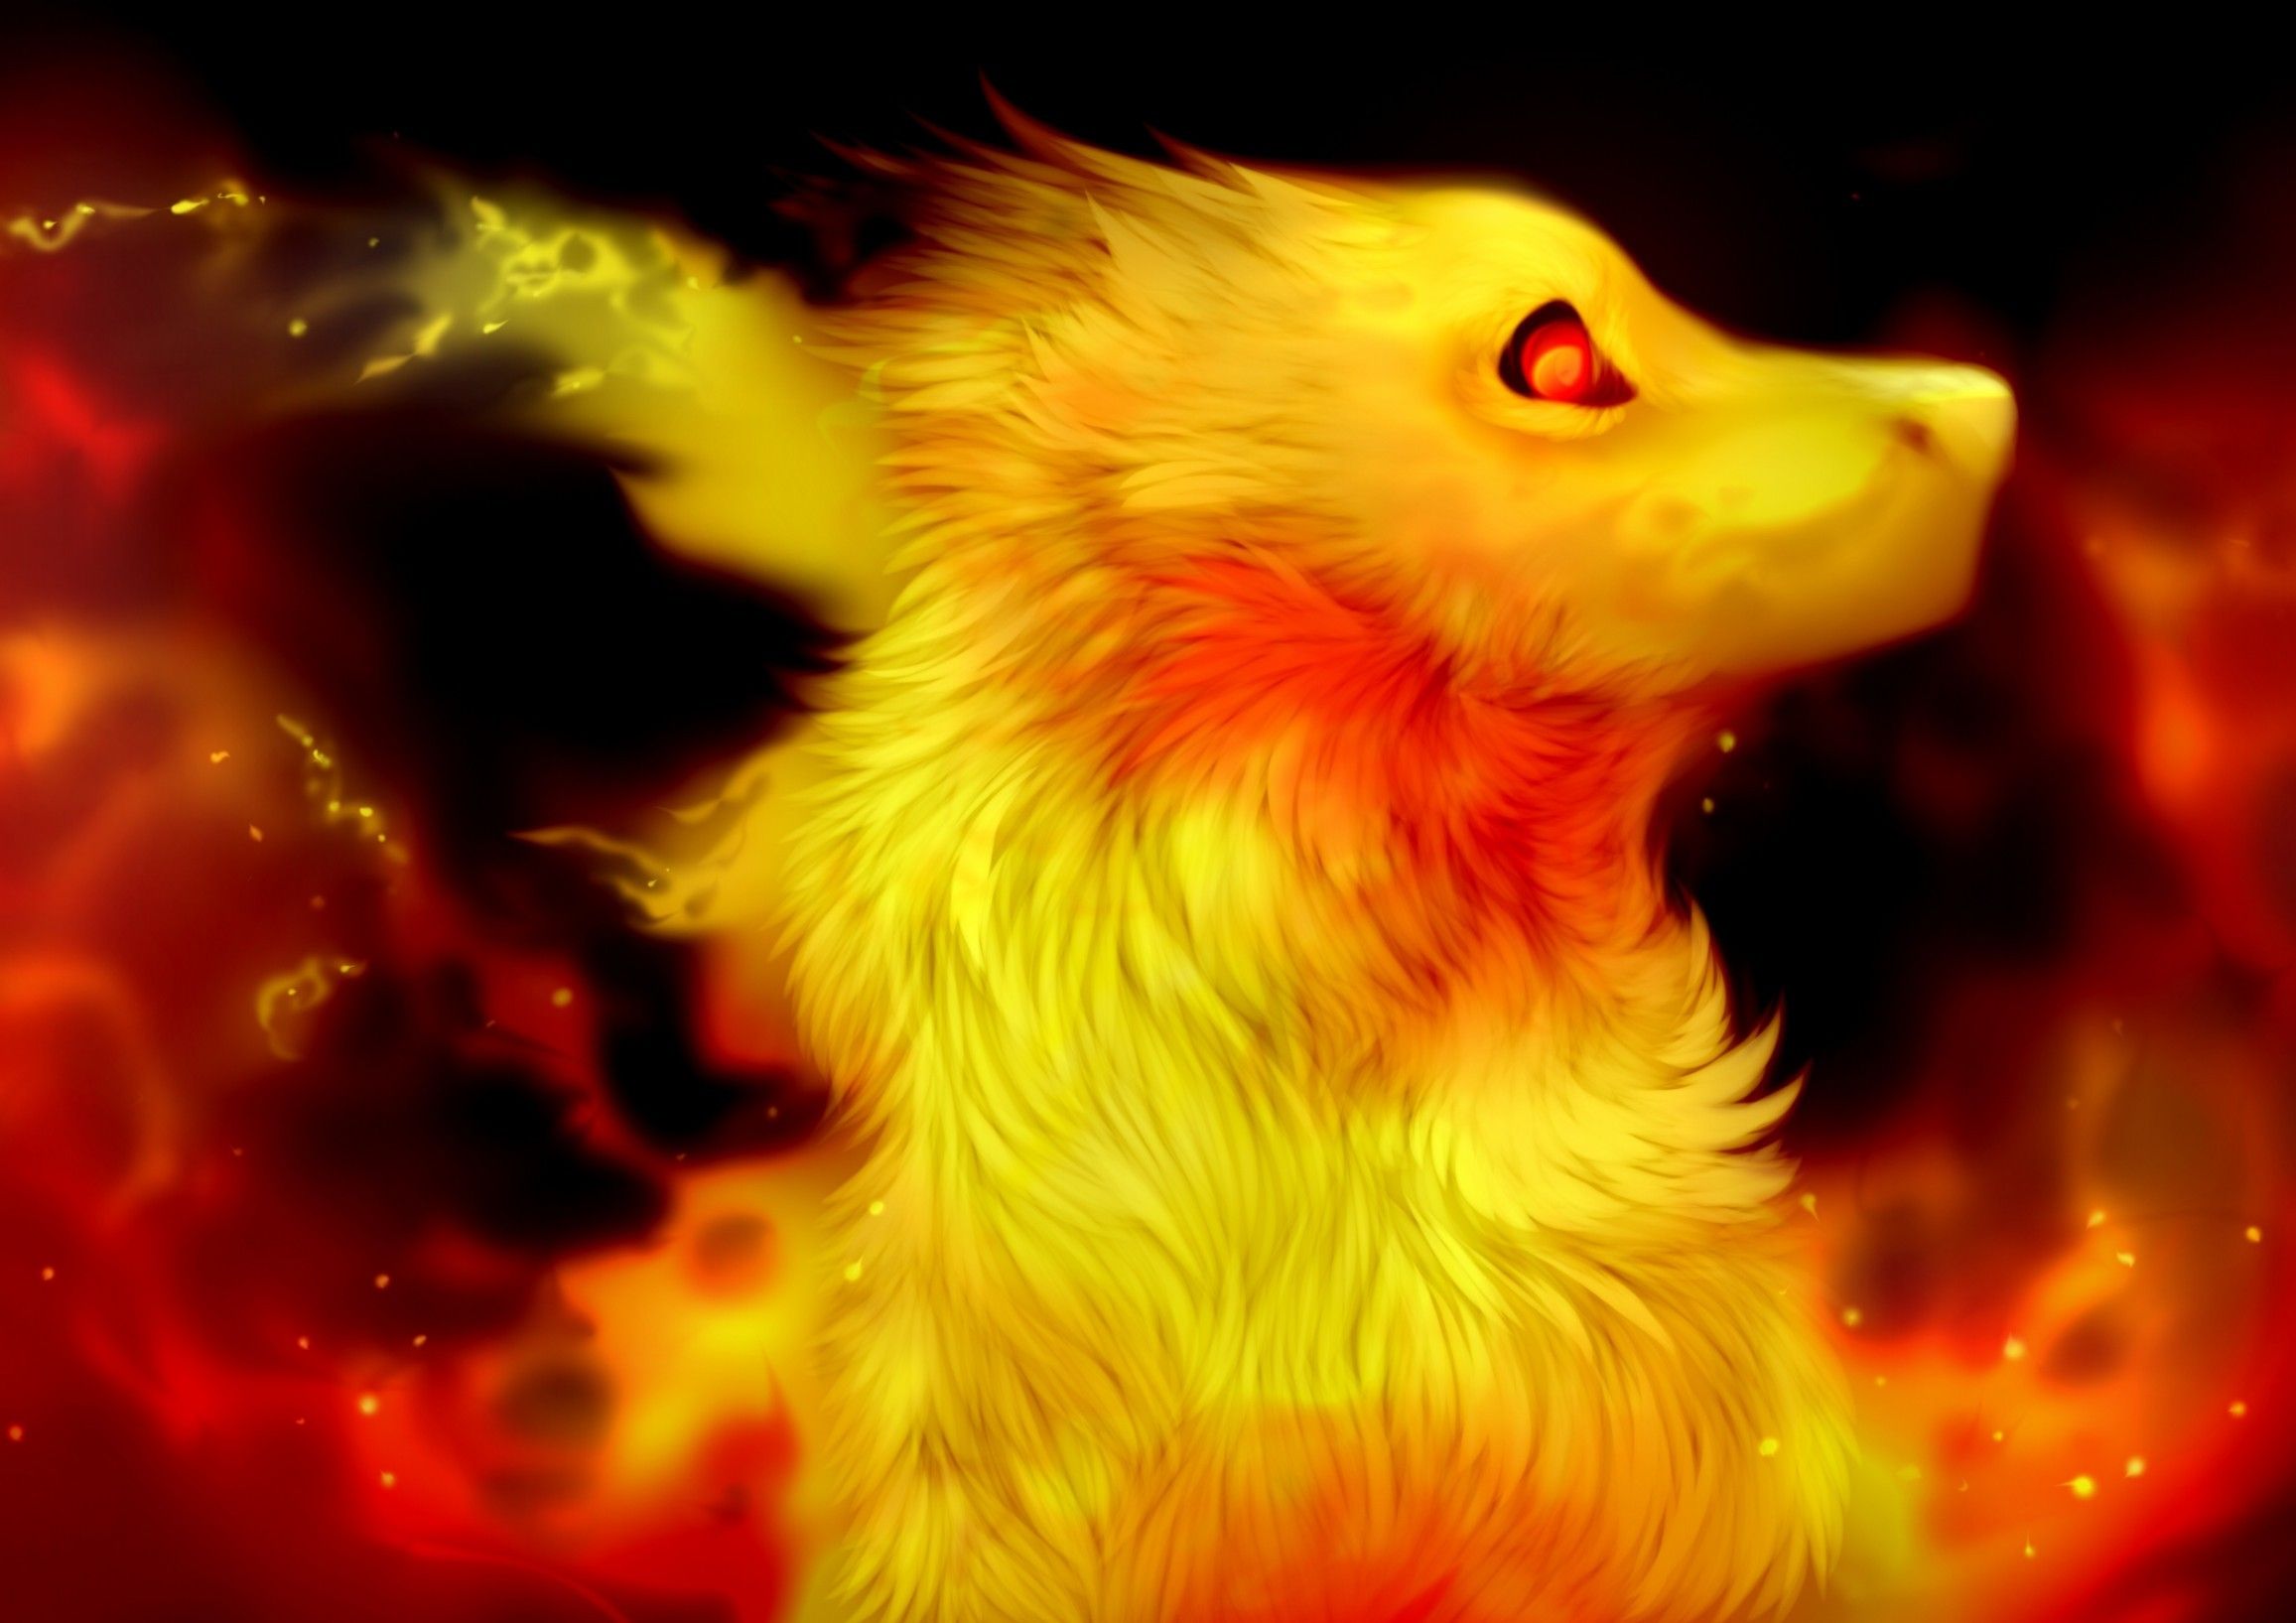 Download 2313x1635 Fire Spirit, Cute, Fantasy Creature, Profile